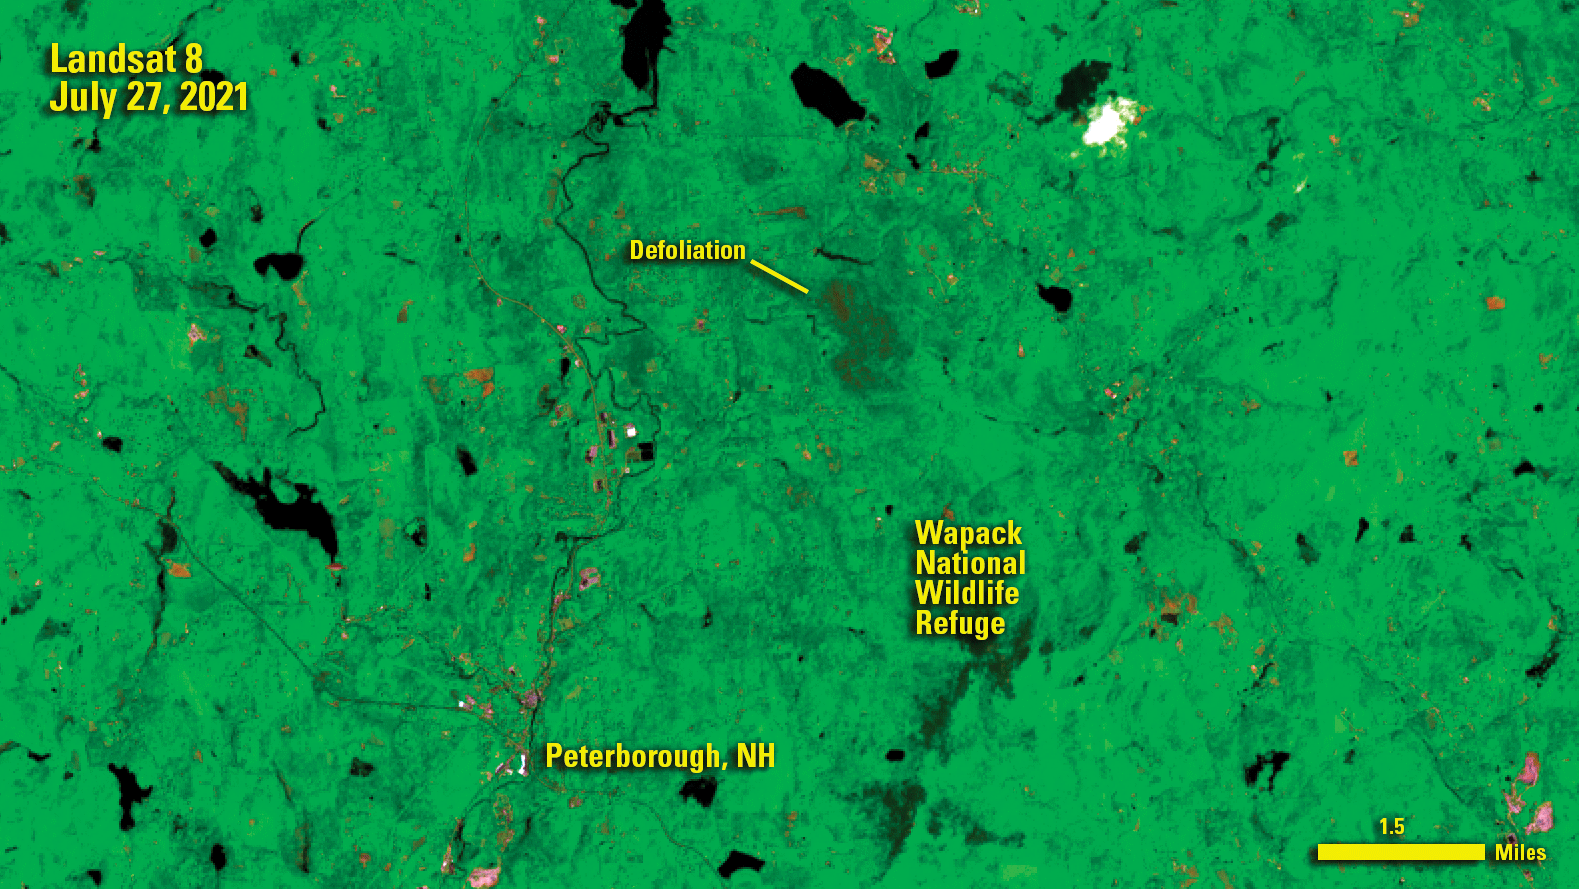 Landsat image showing defoliation in the Wapack National Wildlife Refuge.